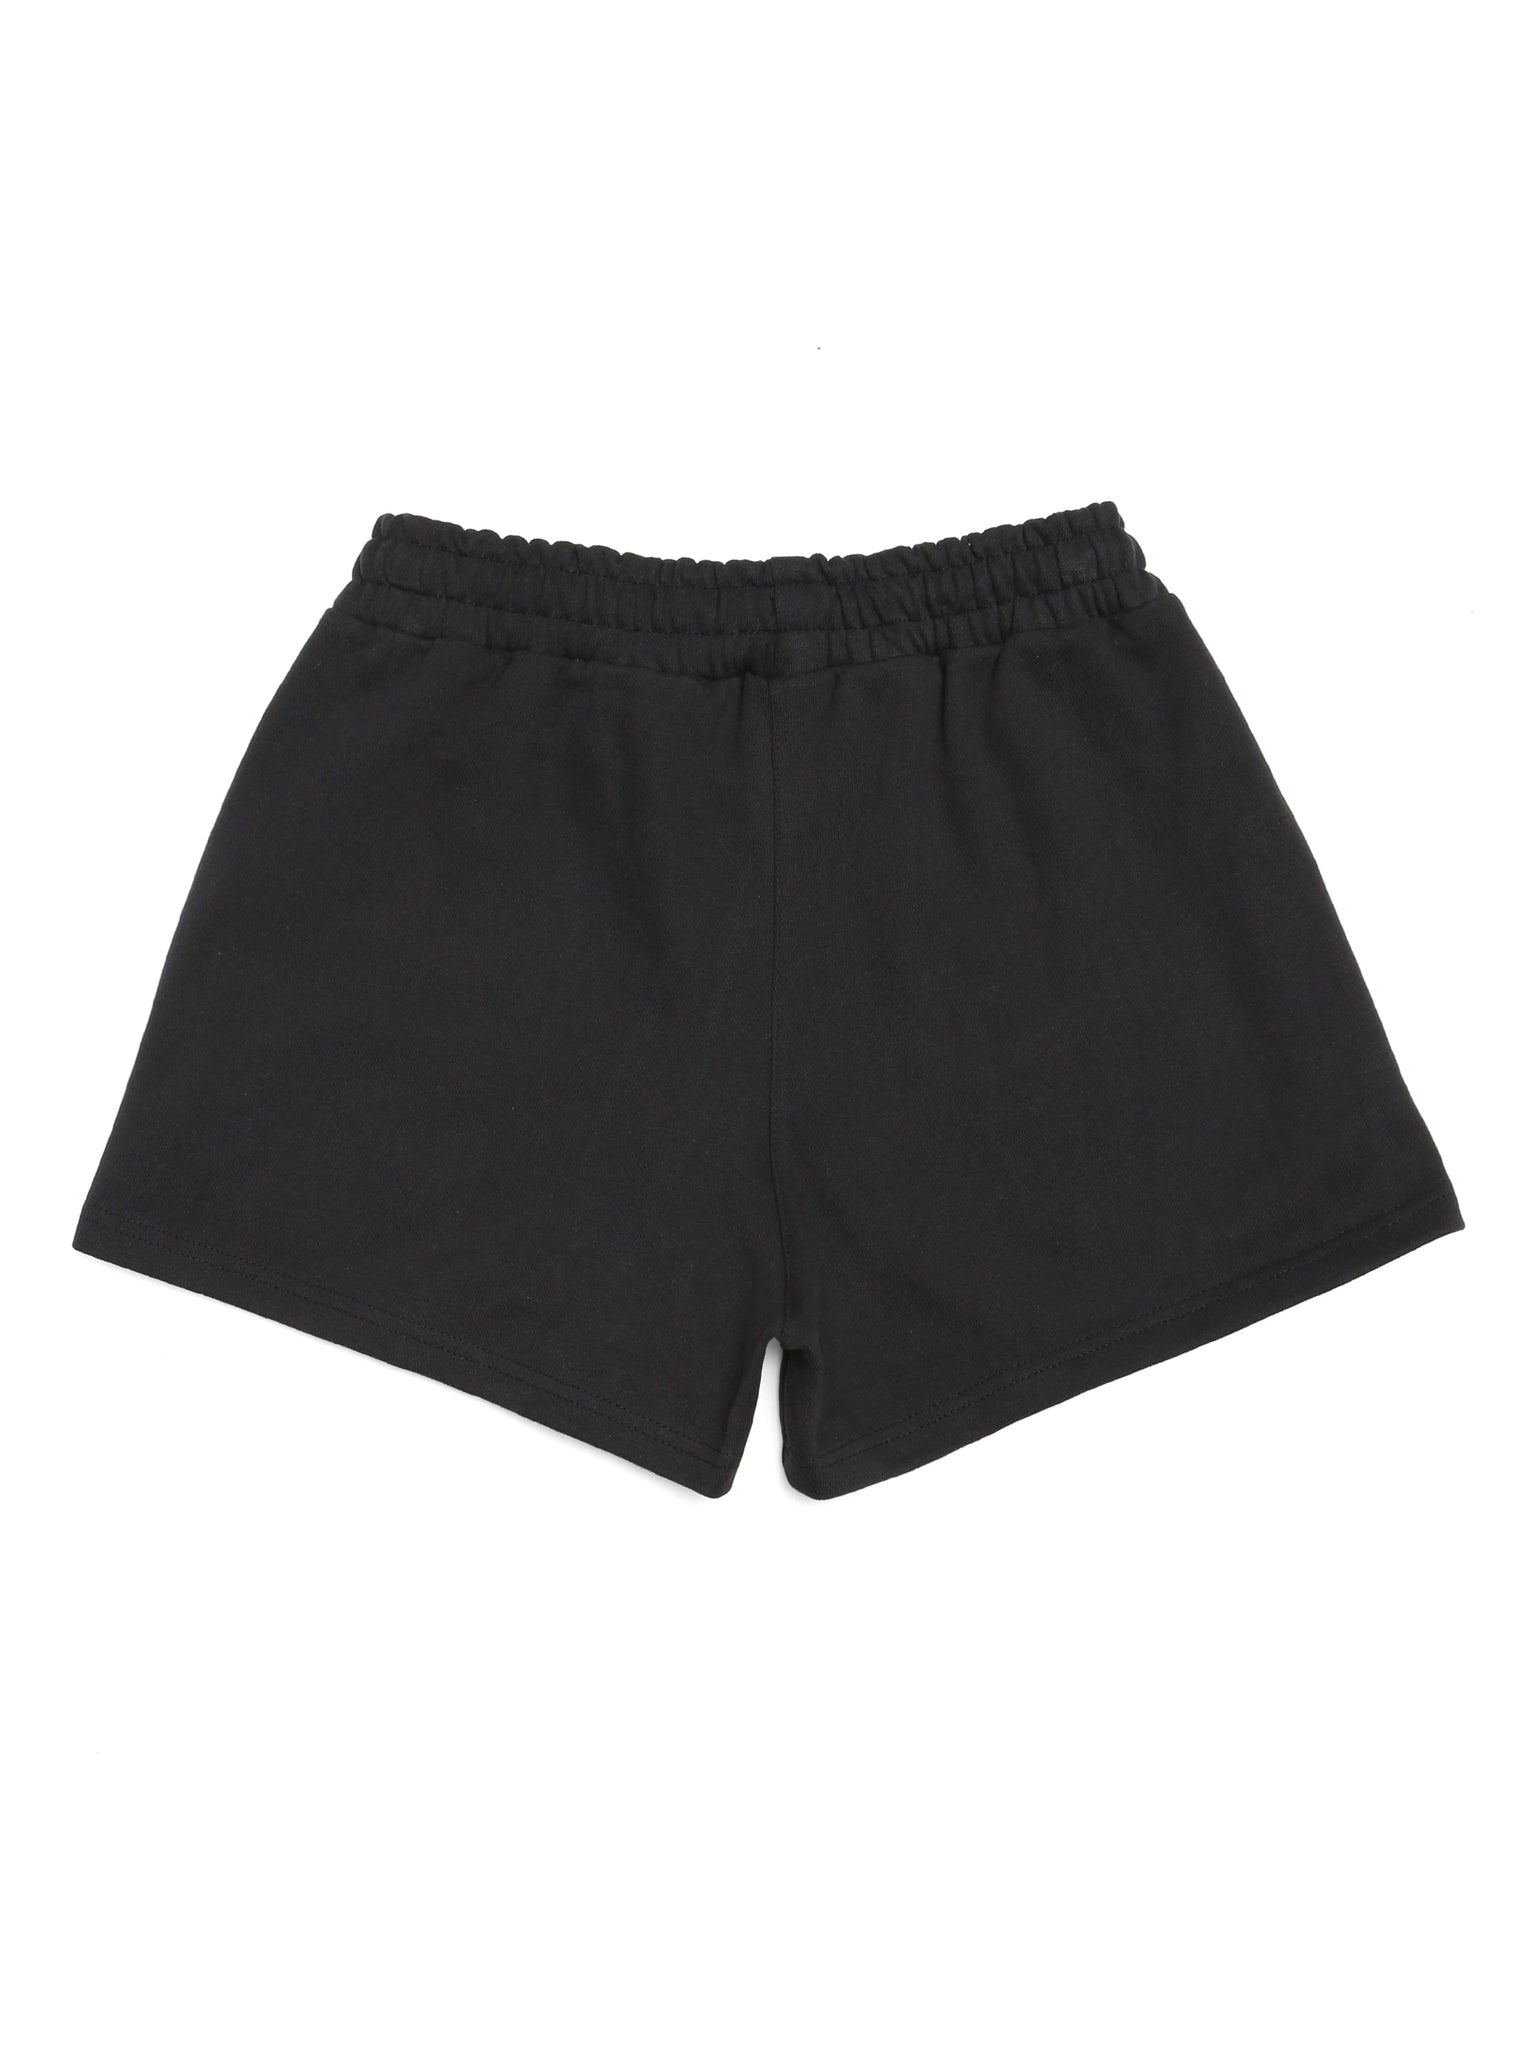 Brooklyn Industries Women's Sweat Shorts in Black